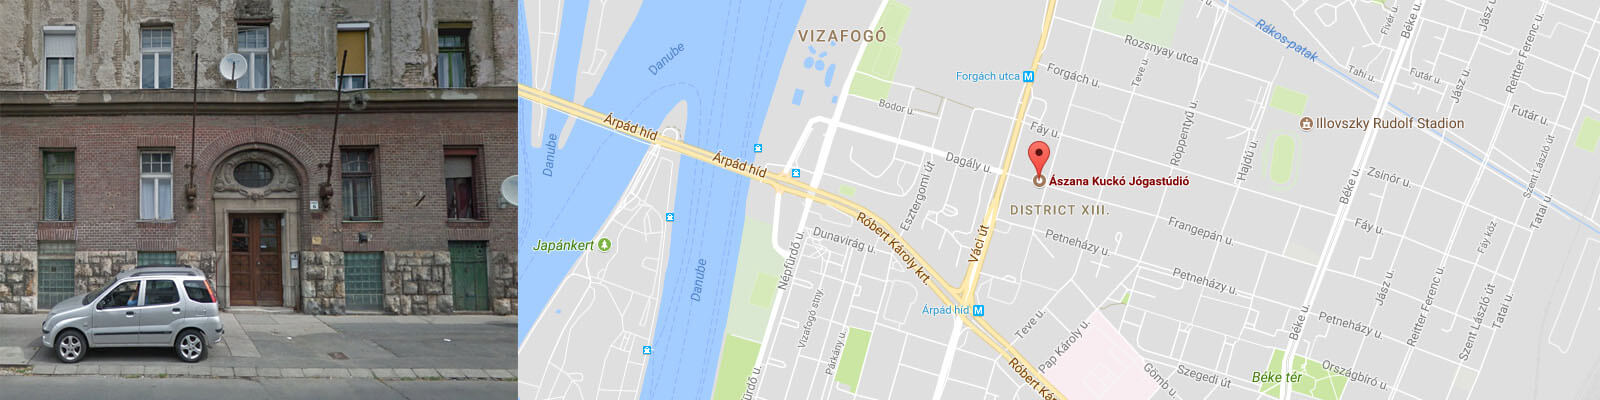 google térkép ászana kuckó elhelyezkedése